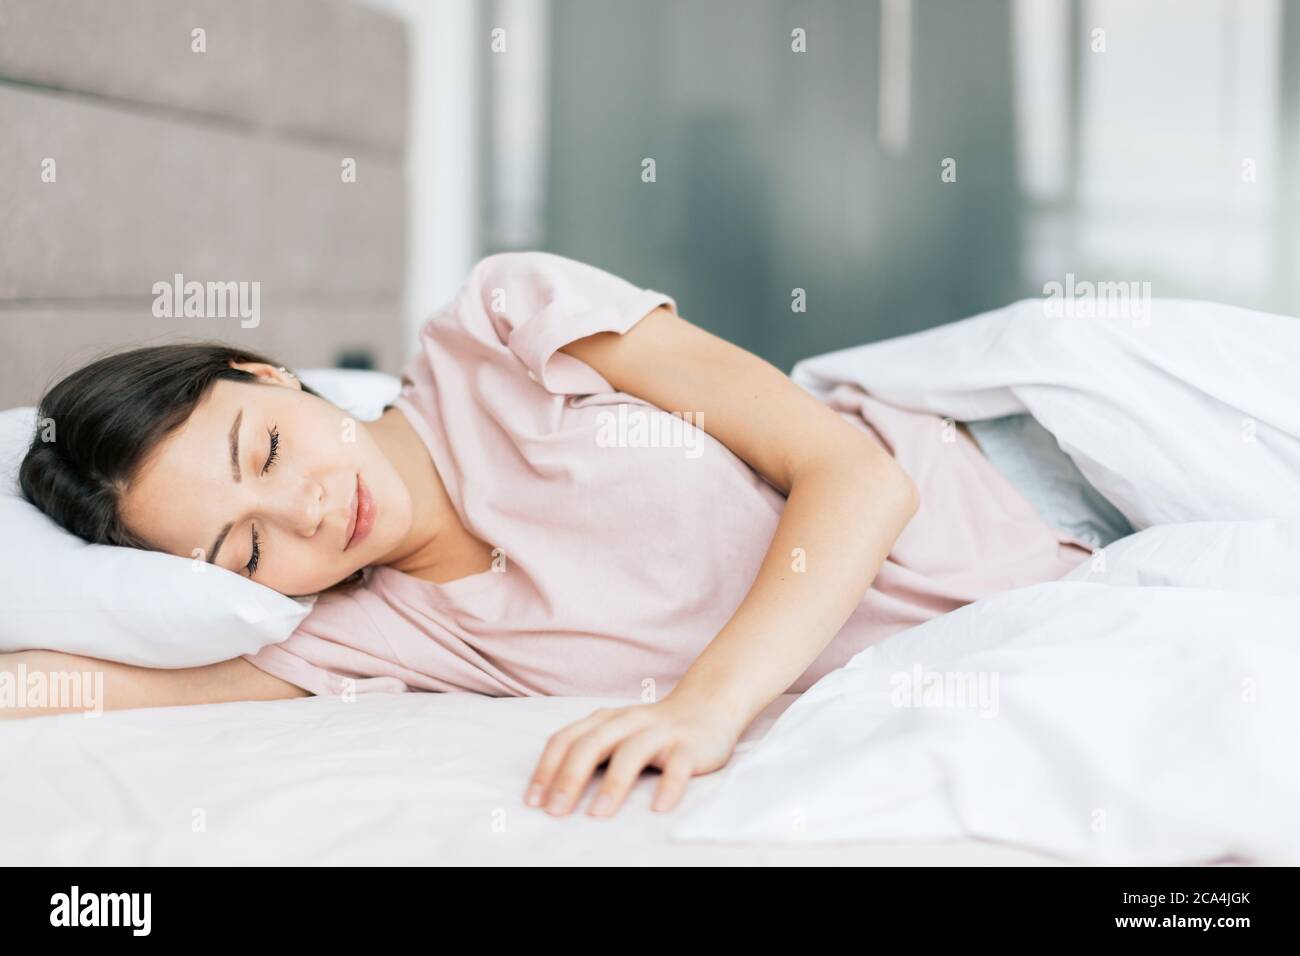 good looking girl sleeping in the bed, good night . healthy sleep, health care Stock Photo